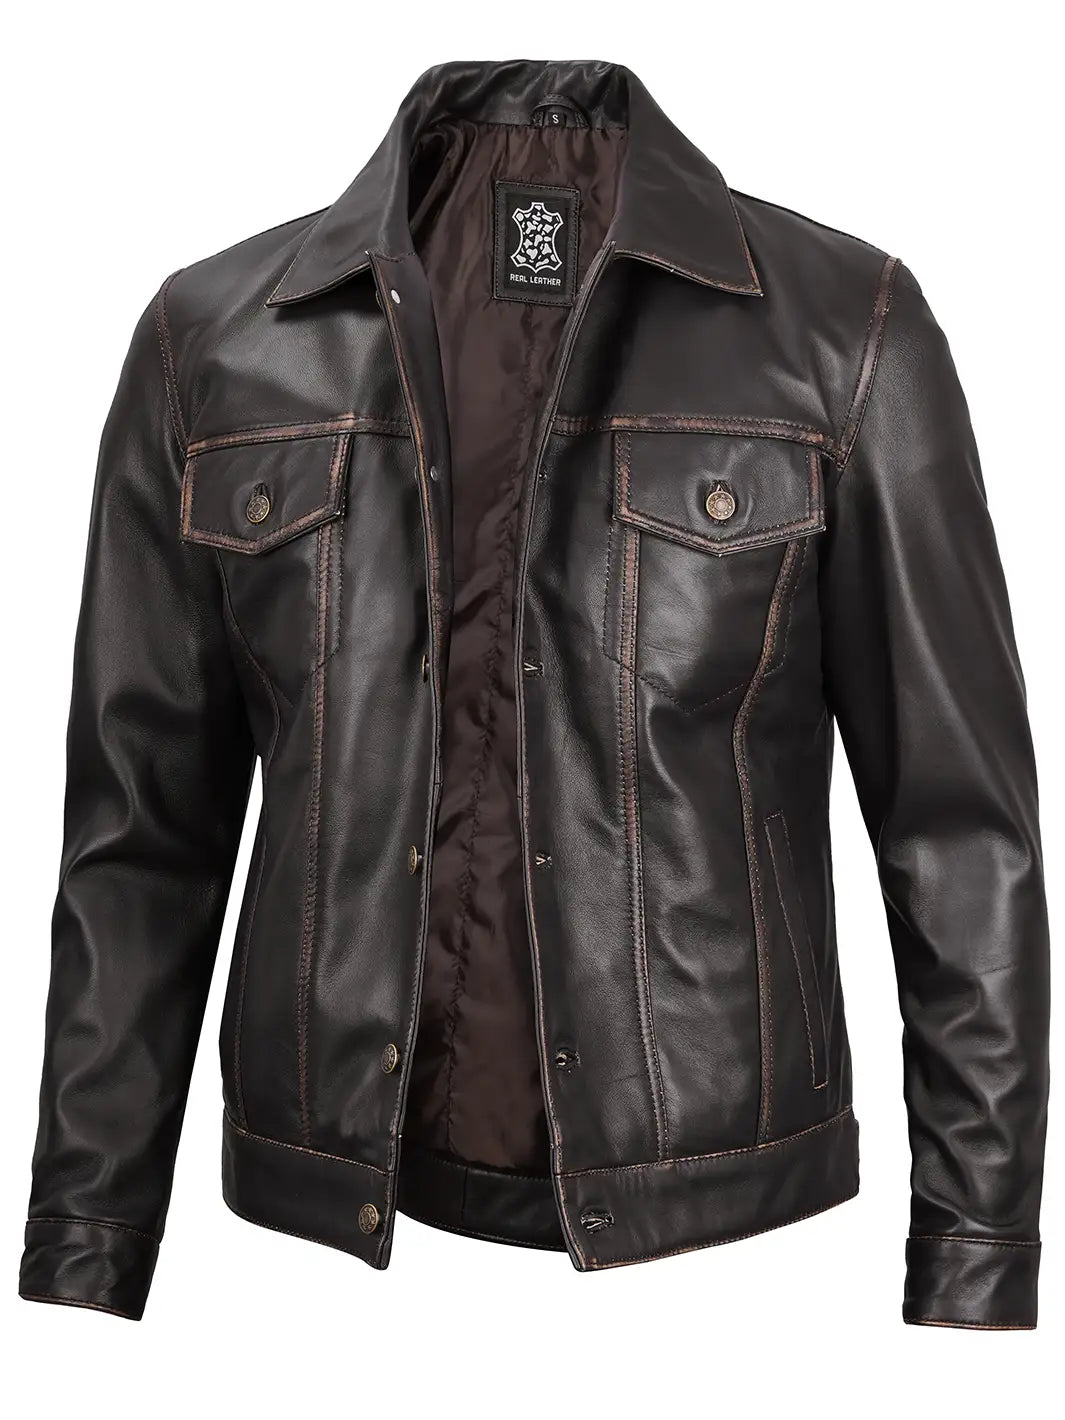 Ruboff trucker leather jacket